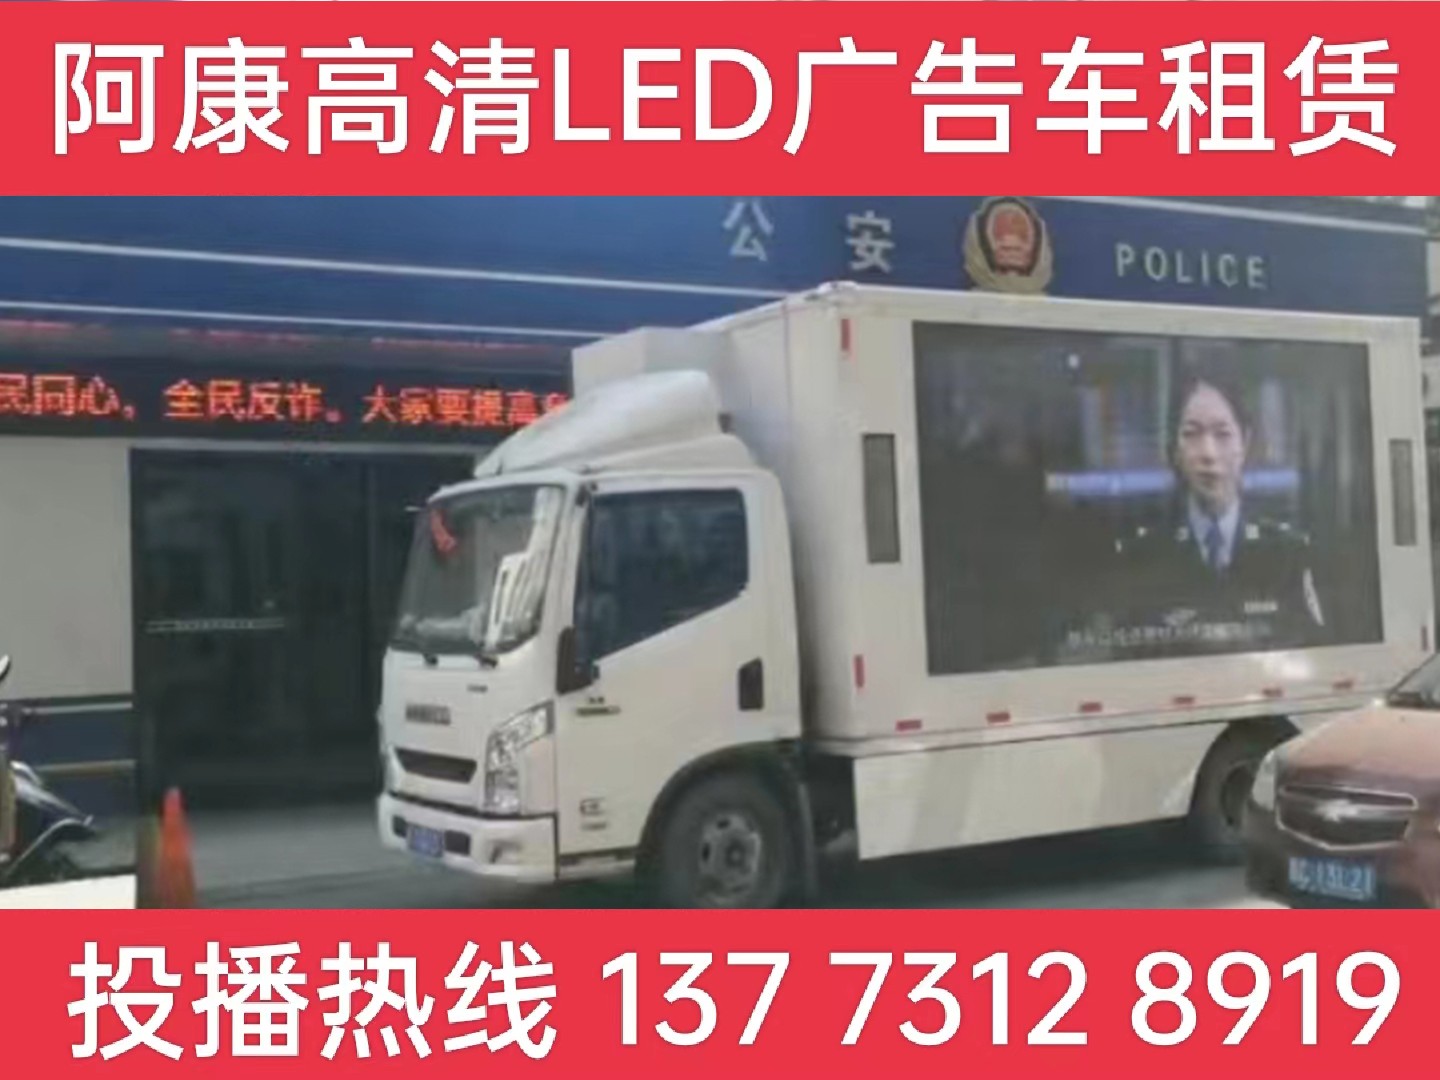 浦口区LED广告车租赁-反诈宣传